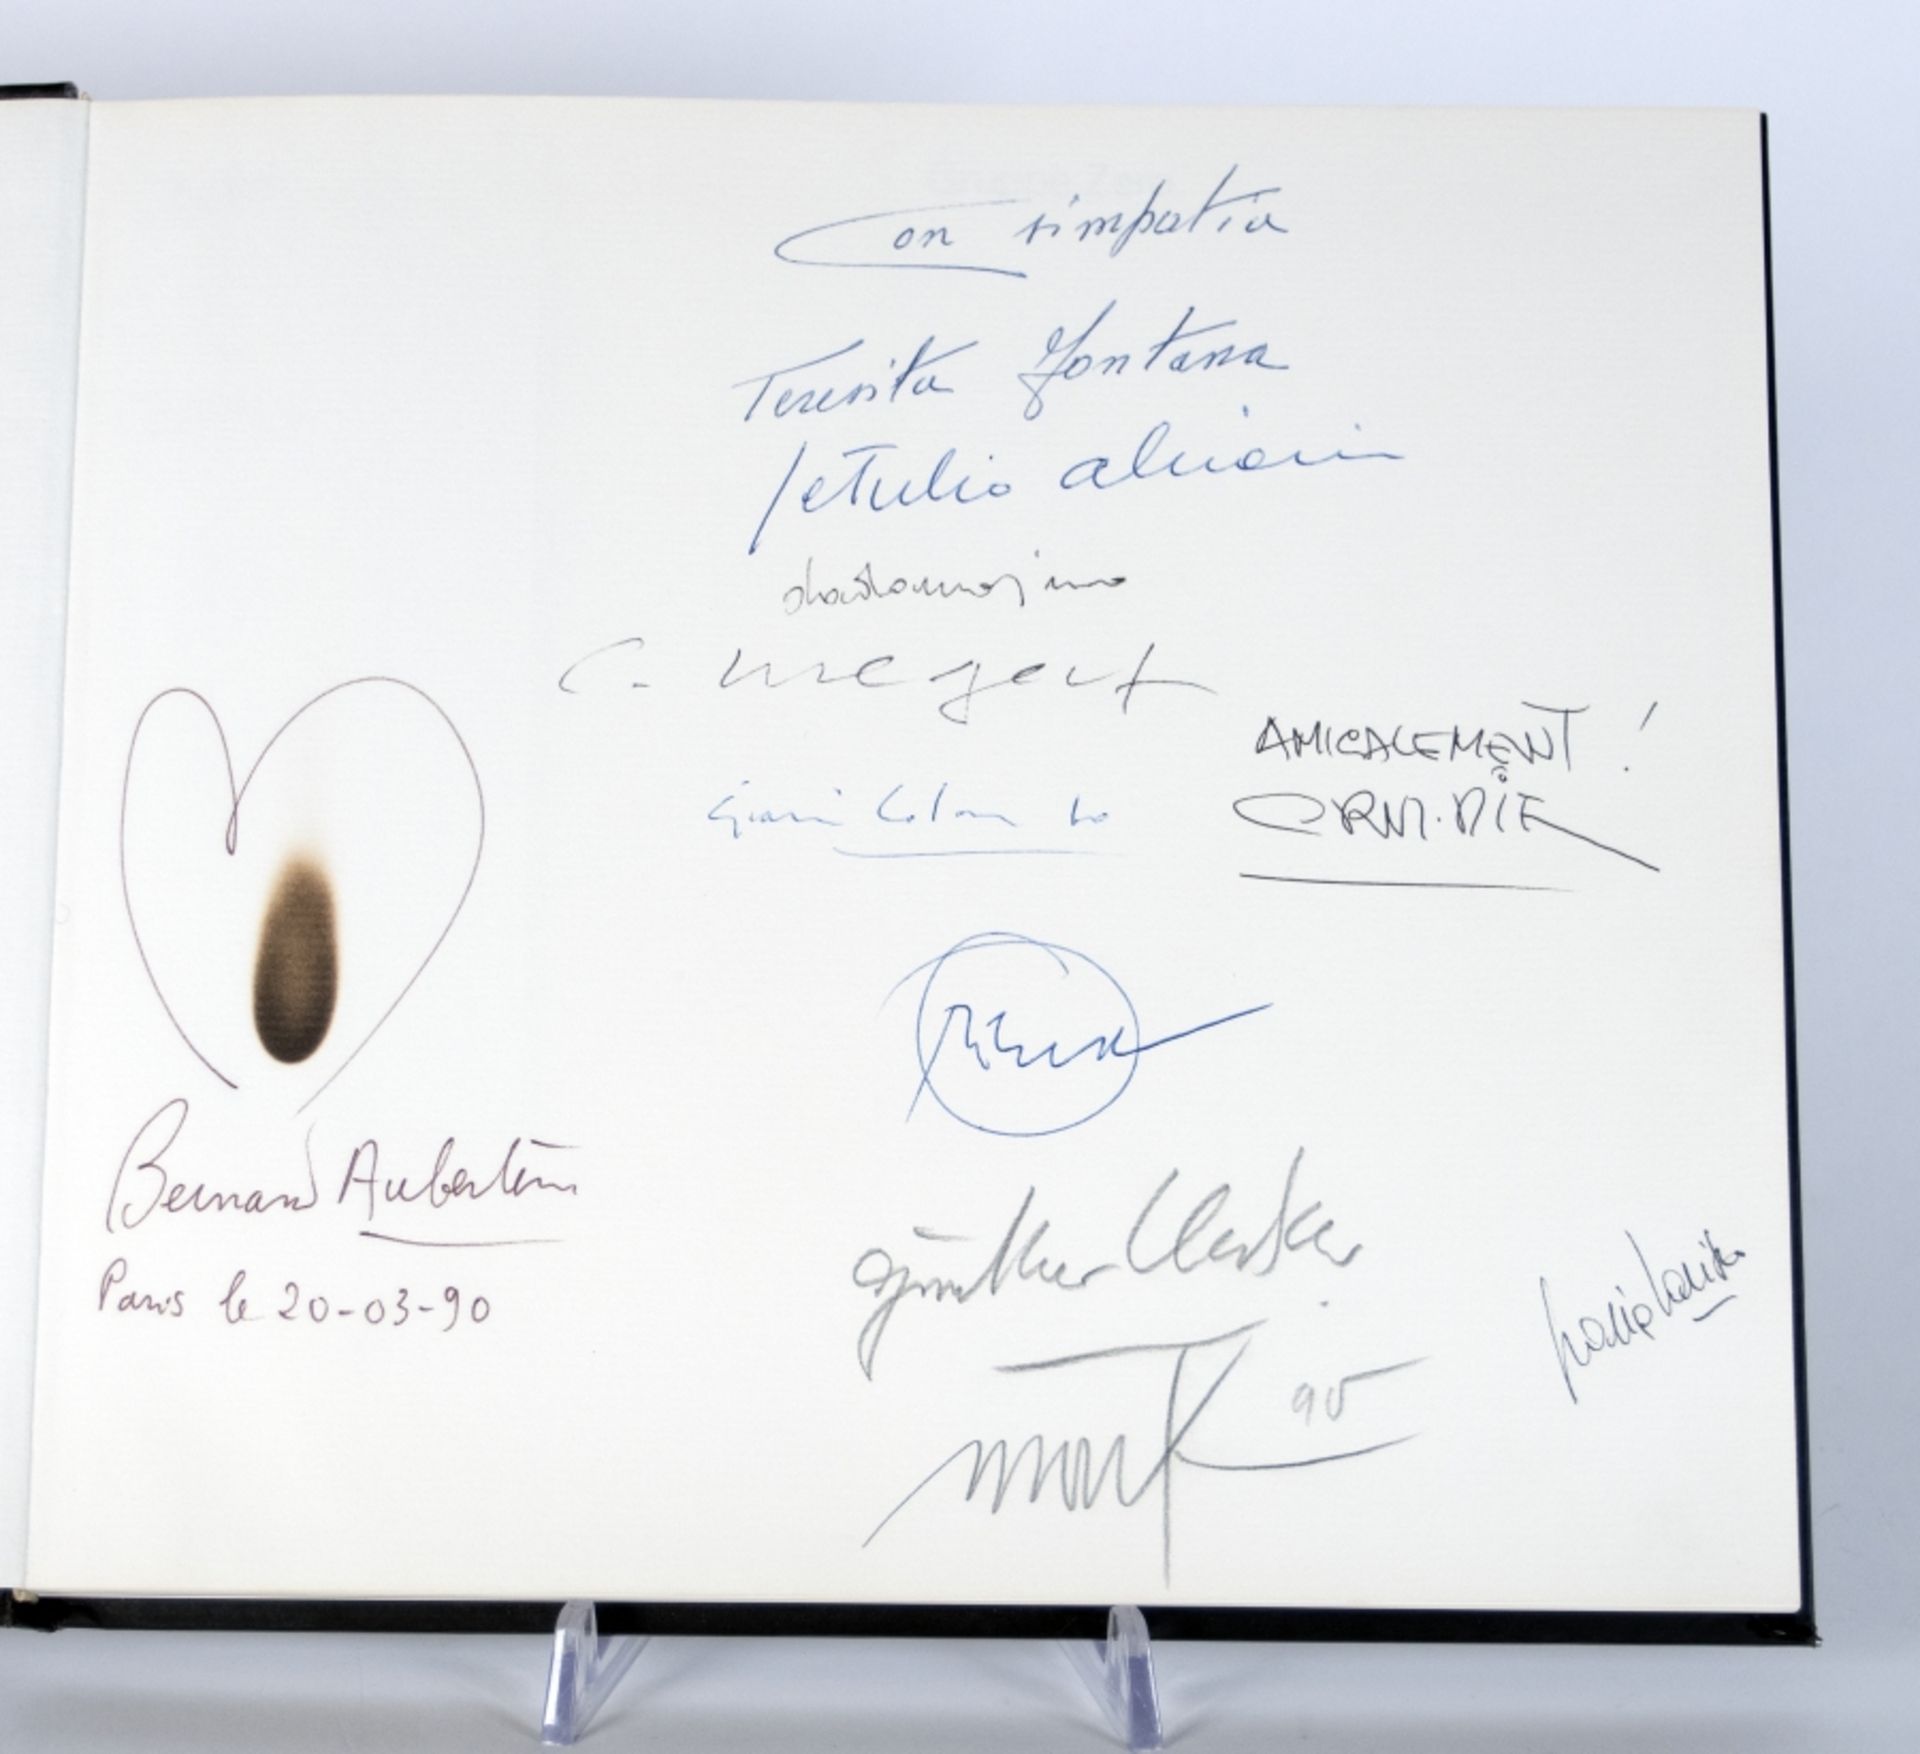 Uecker, Mack, Piene u. a.:  Katalog zur Ausstellung "Gruppe ZERO" in der Galerie Schöller 1988